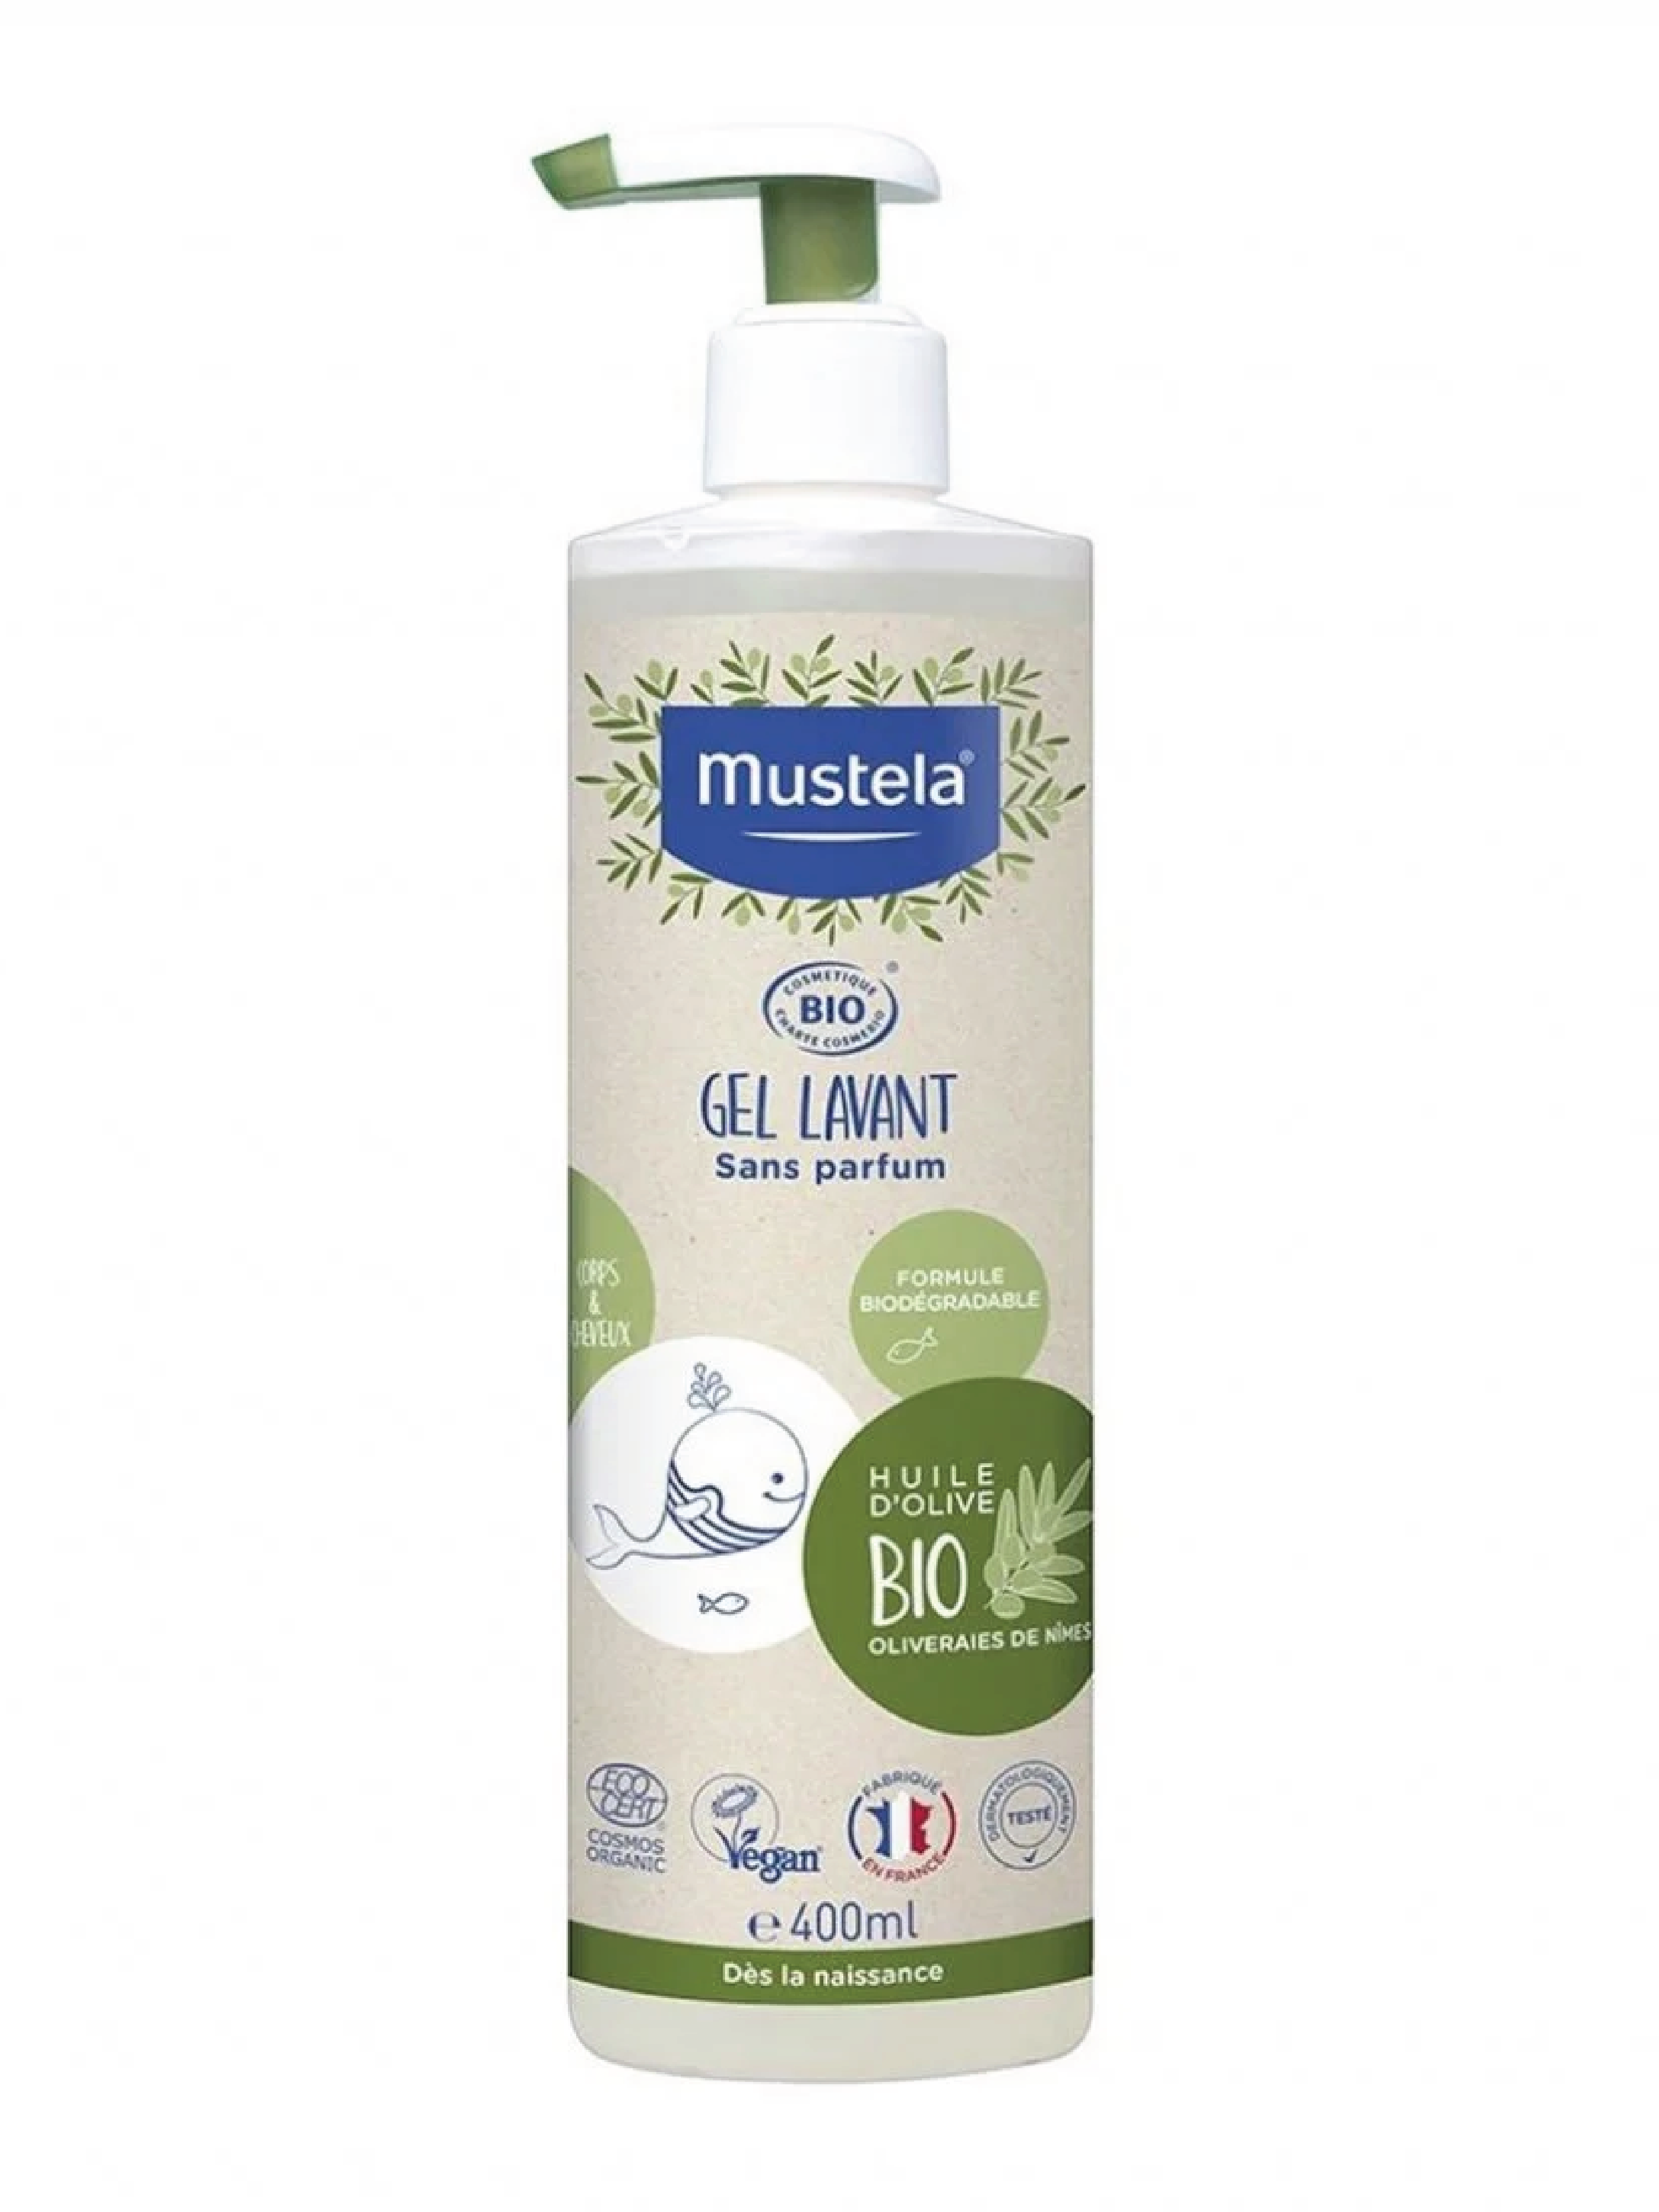 Mustela Organic Cleansing Gel, 400 ml